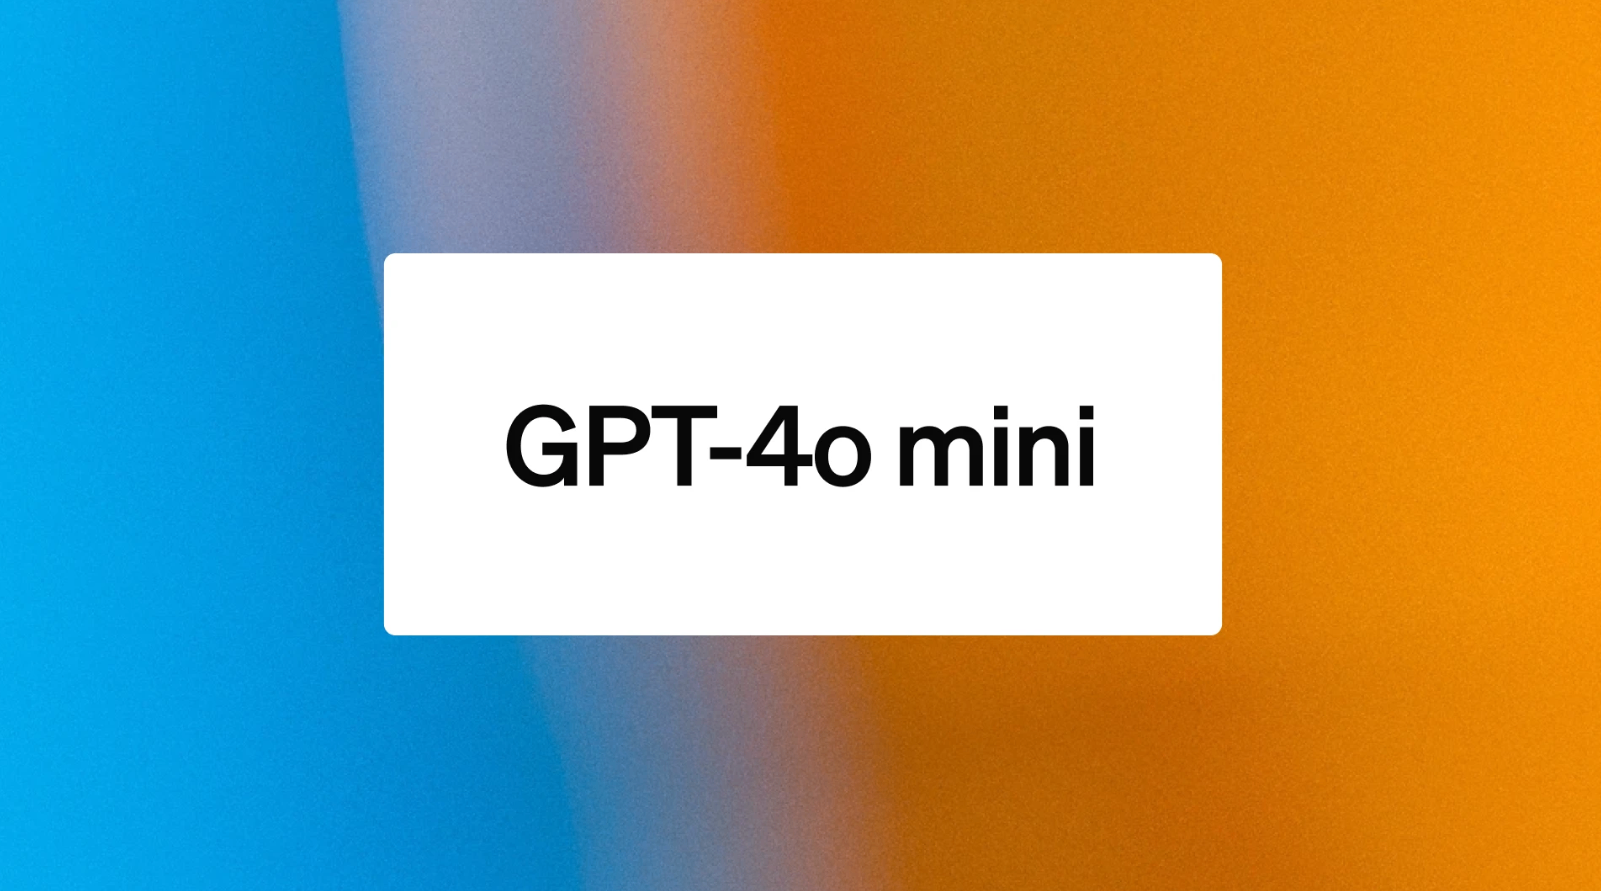 大模型也掀起价格战？OpenAI推出低价小模型GPT-4o mini